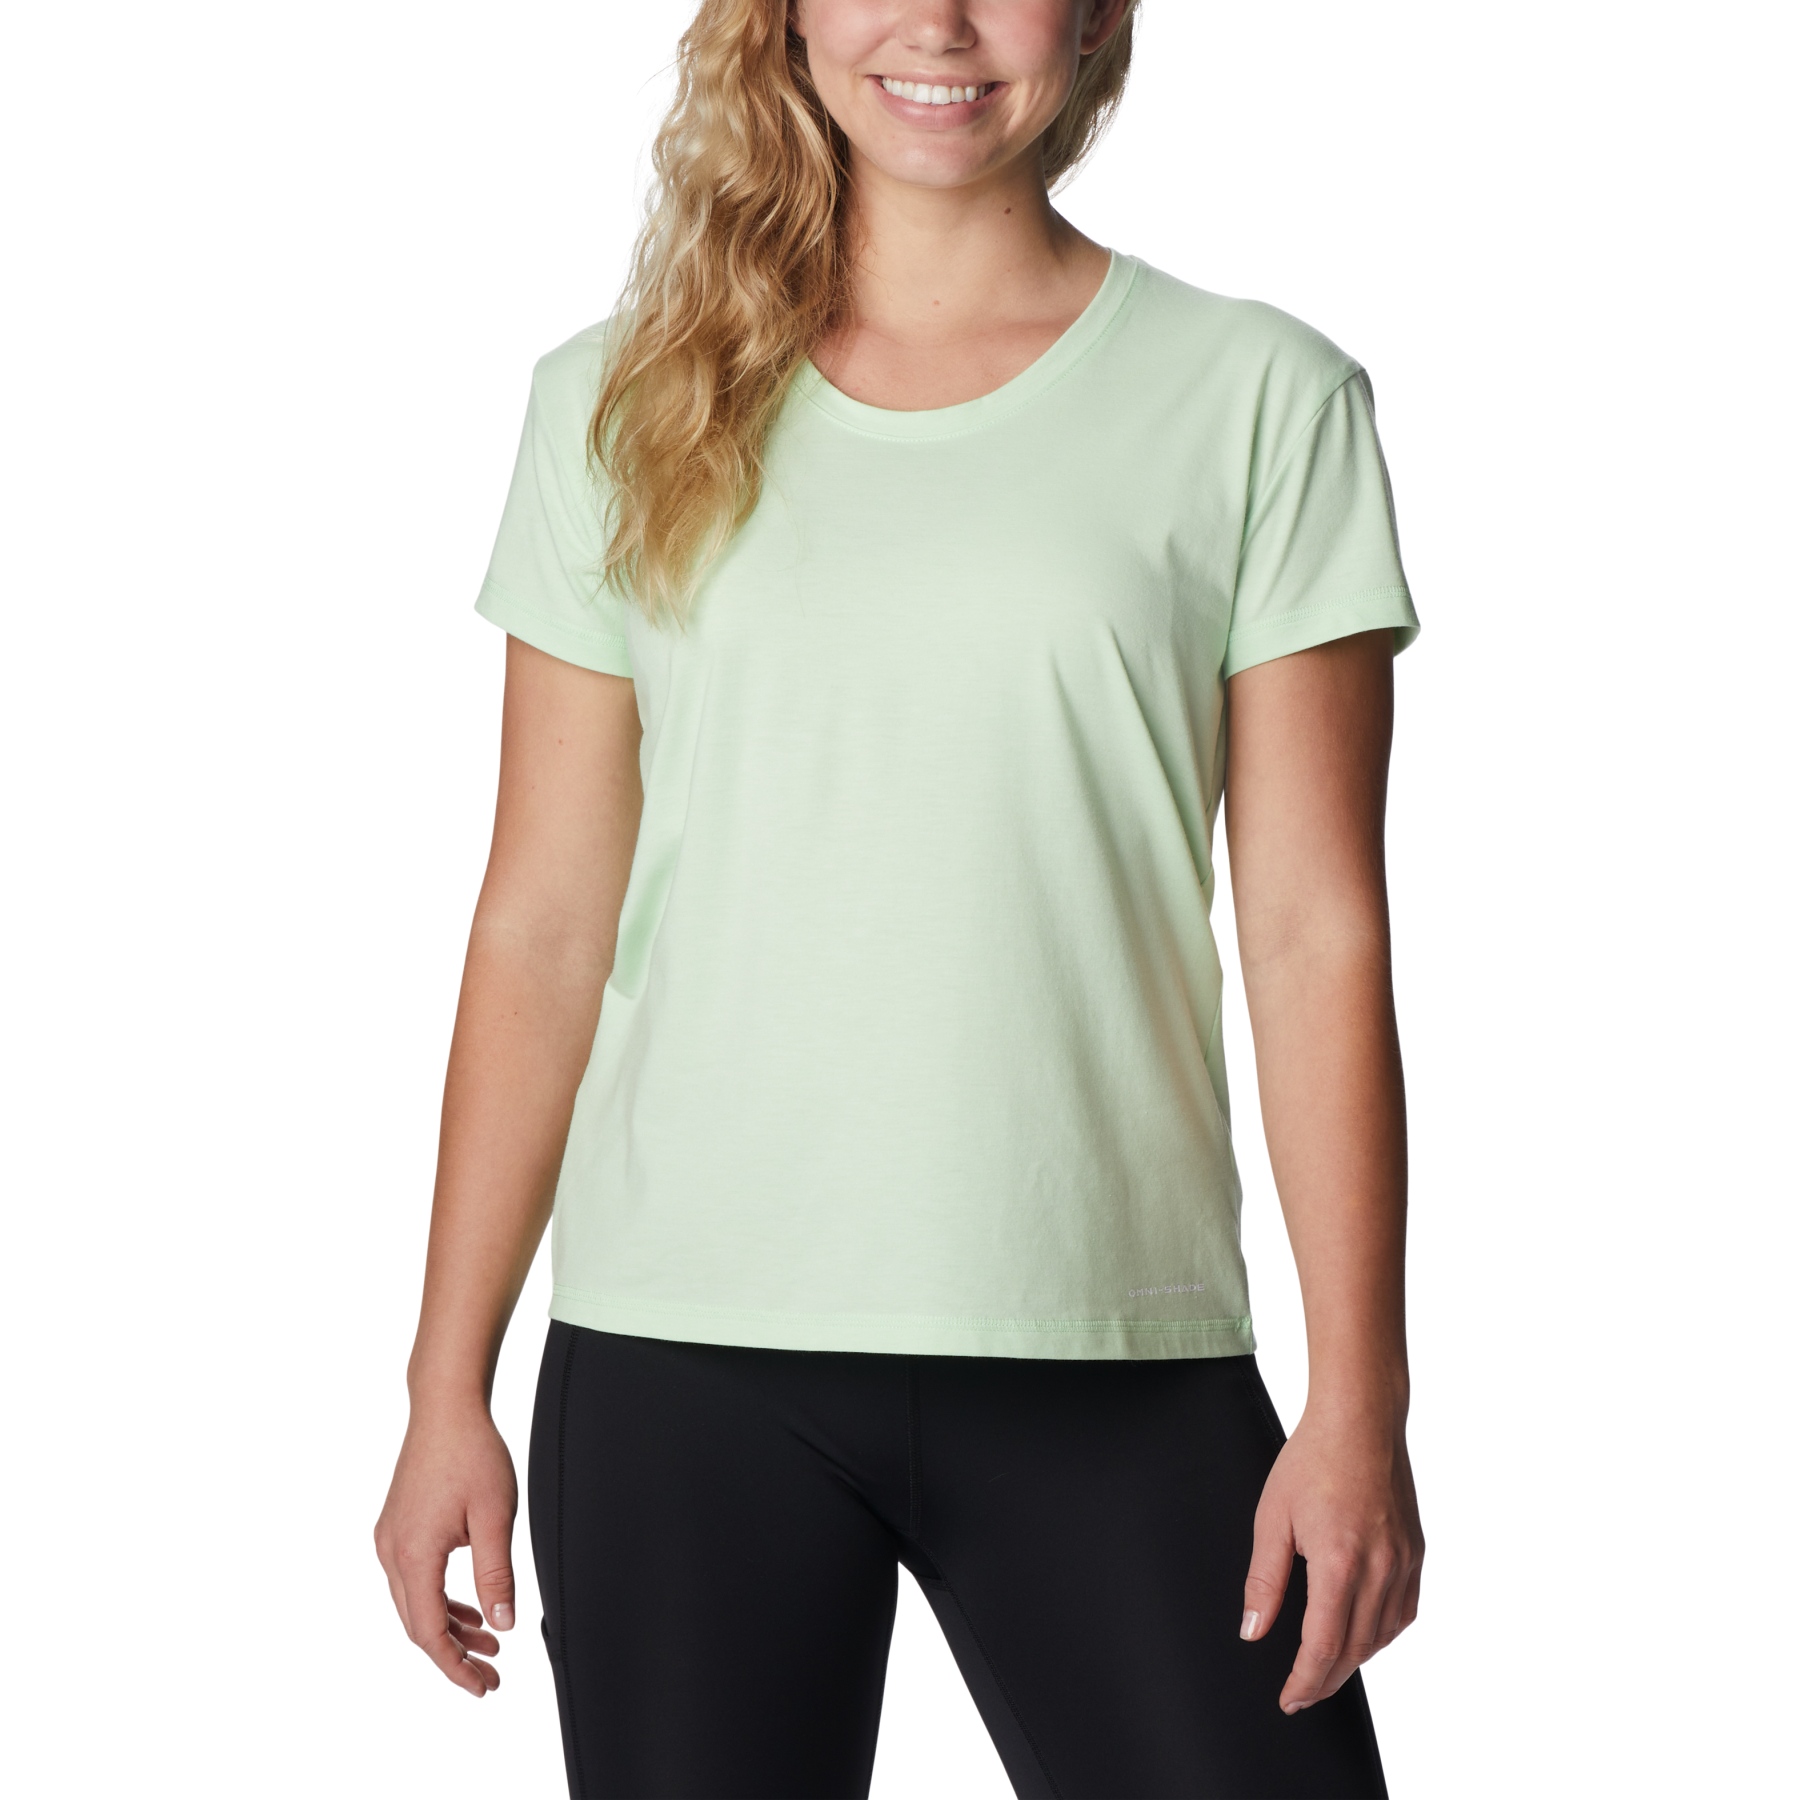 Produktbild von Columbia Sun Trek T-Shirt Damen - Key West Heather